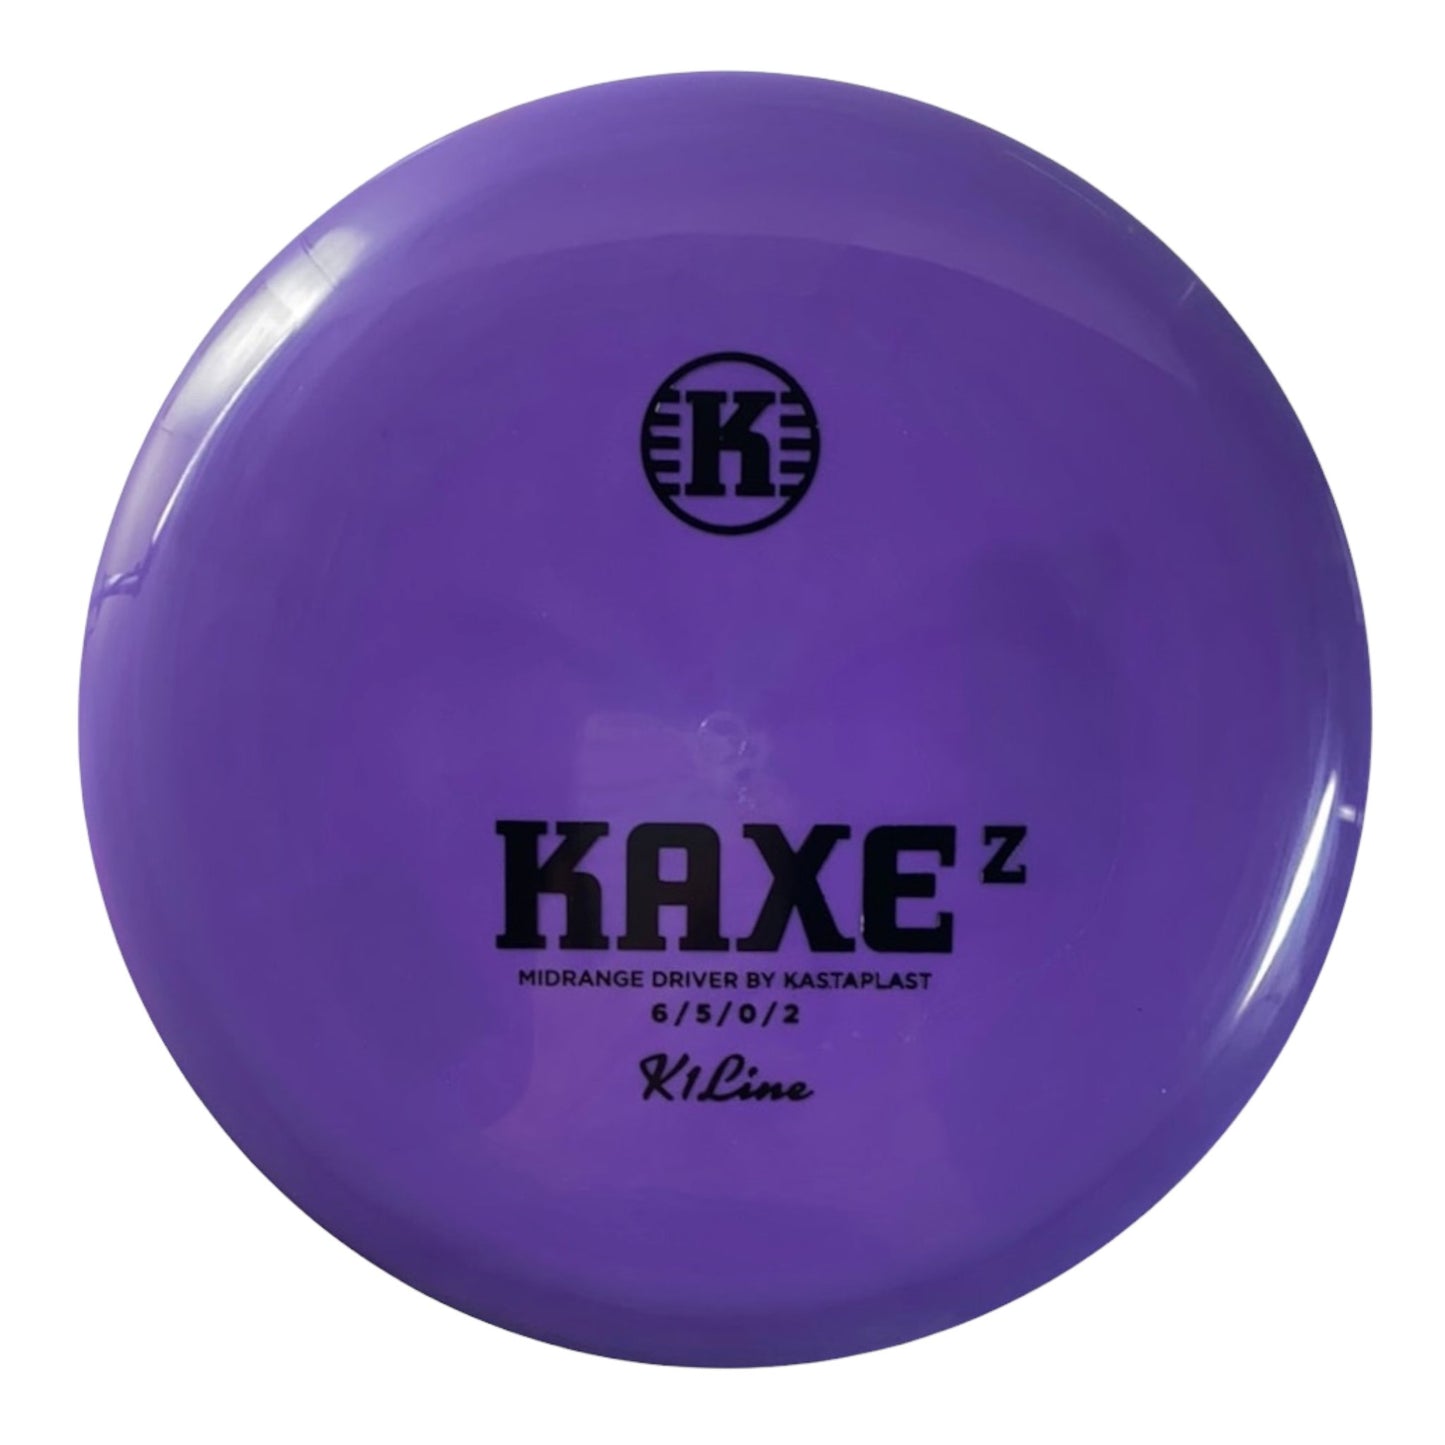 Kastaplast Kaxe Z | K1 | Purple/Black 172g Disc Golf